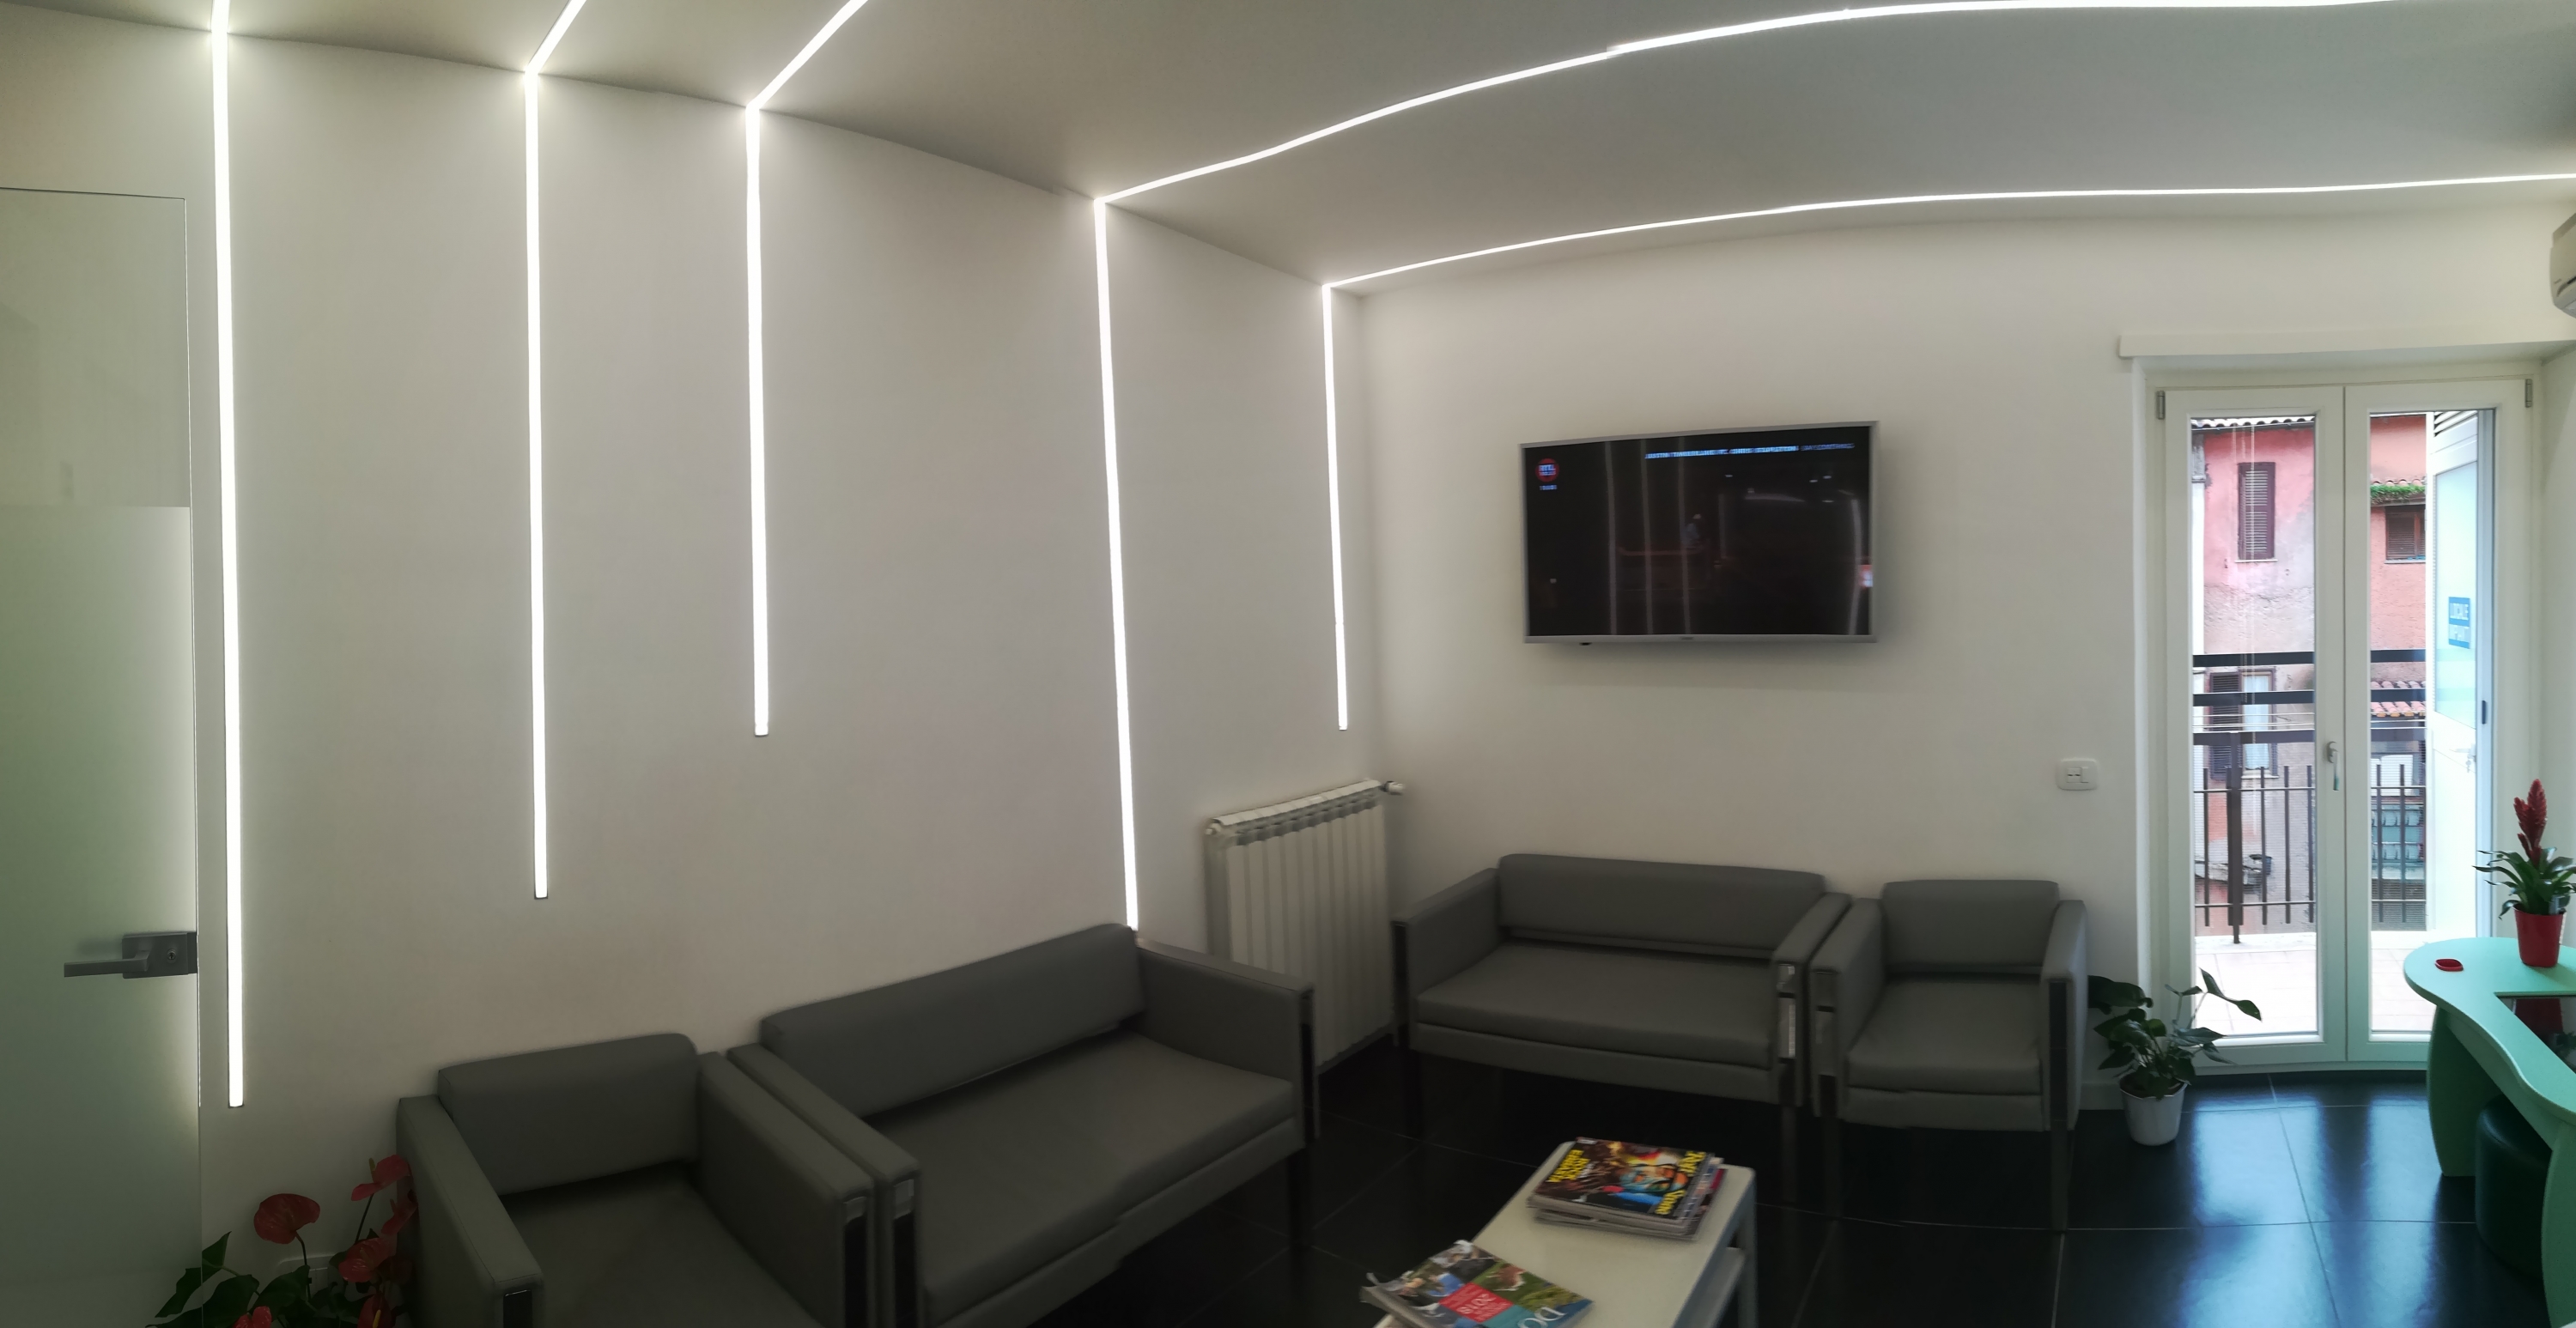 Attesa studio dentistico - progettazione e ristrutturazione - Architetto - illuminazione strisce led